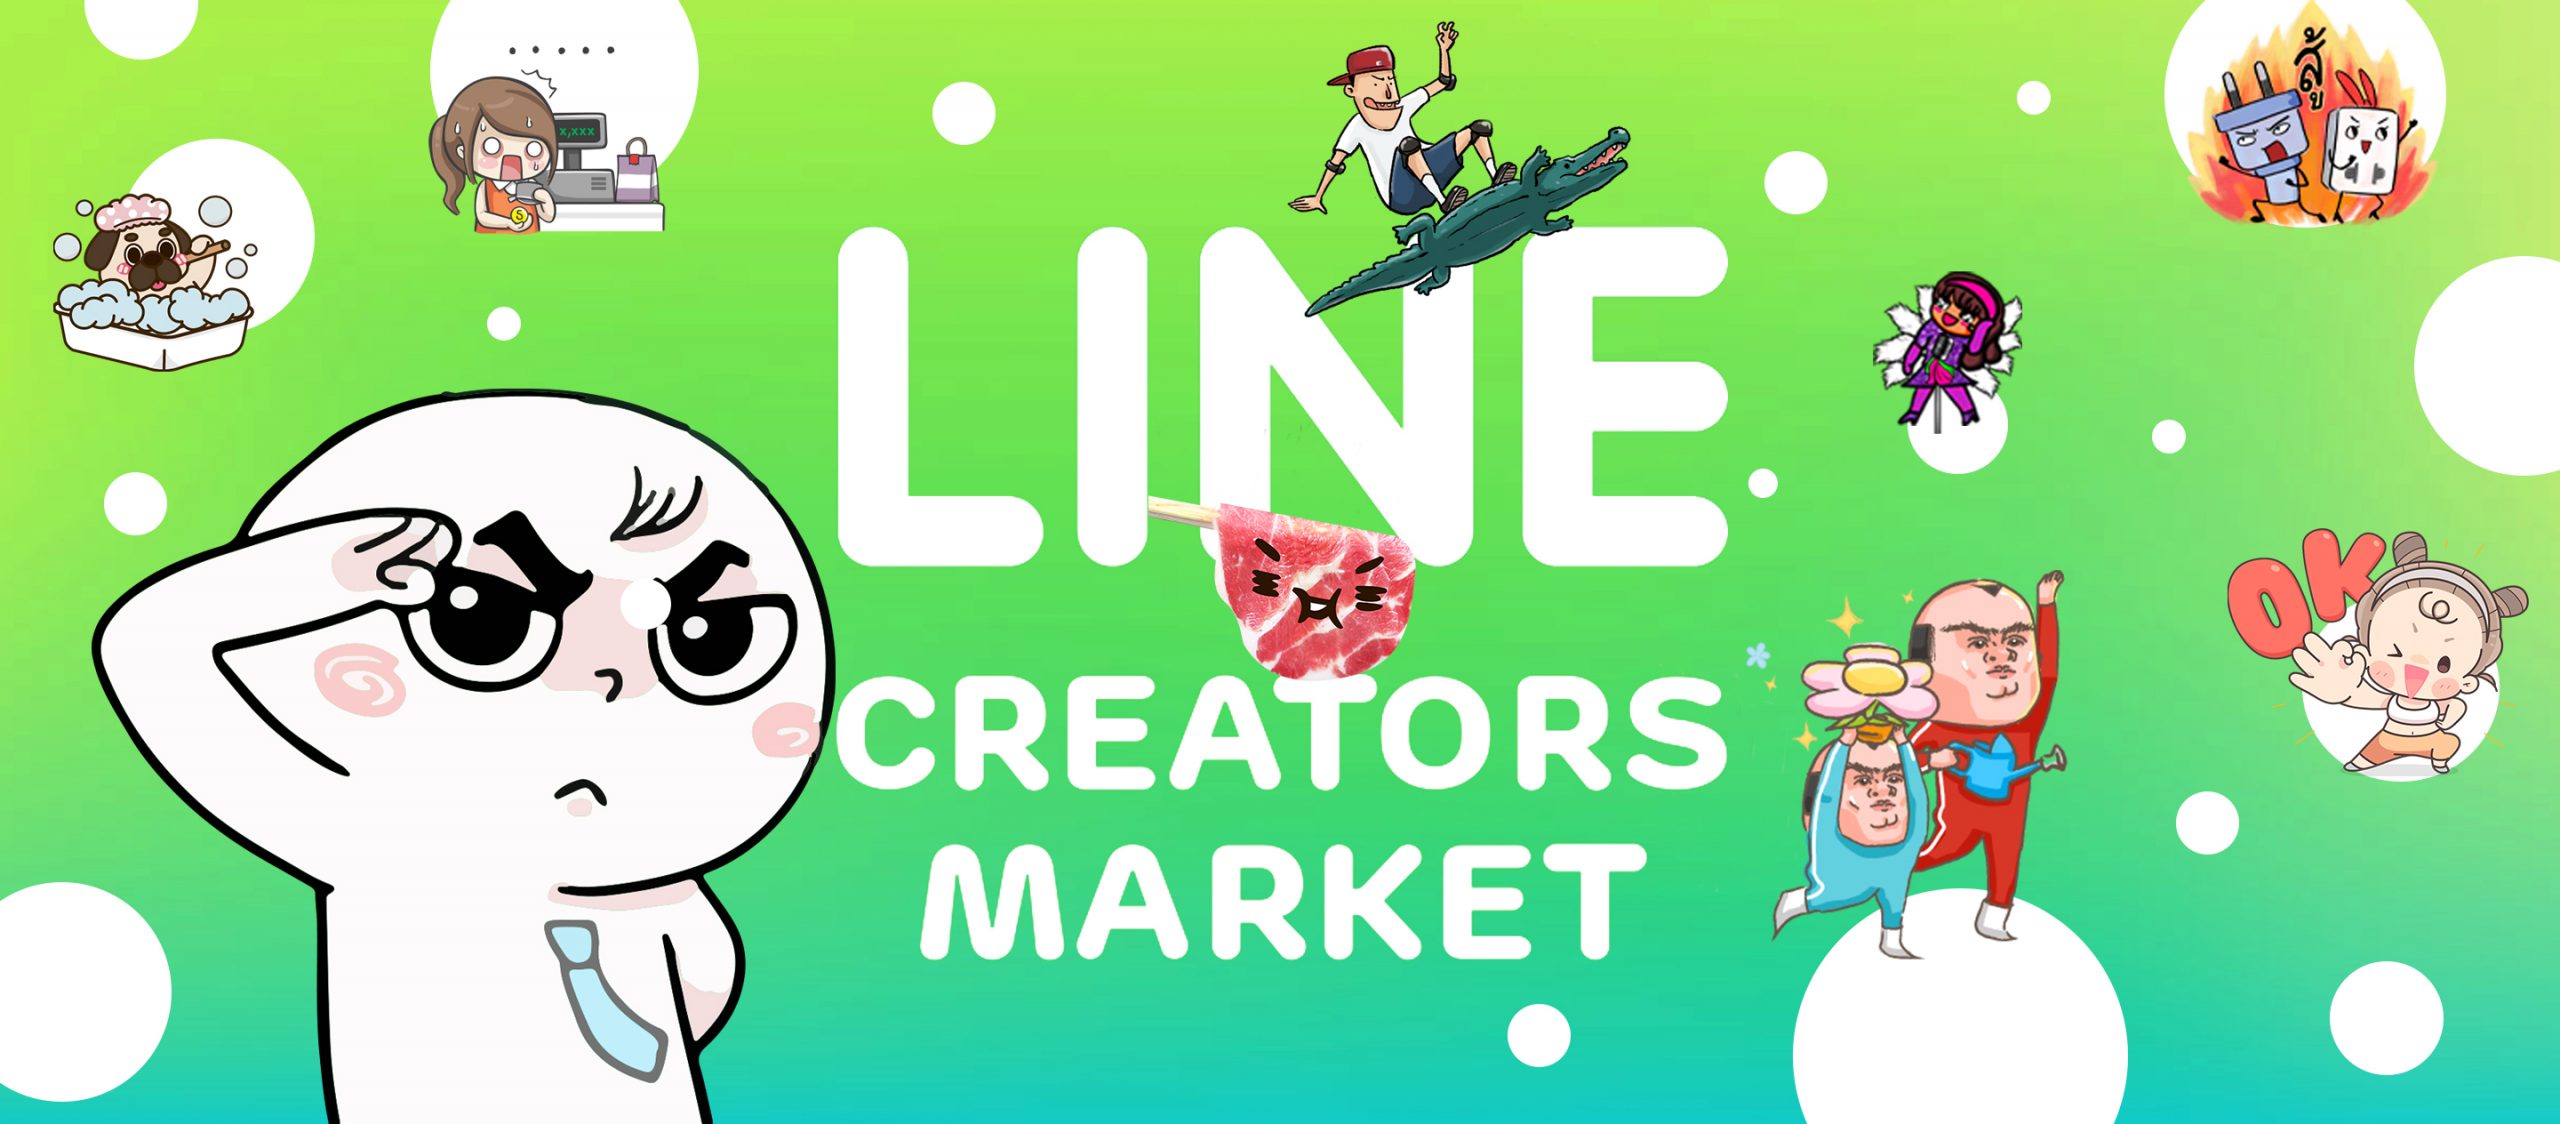 10 สติกเกอร์ที่สนุกและสร้างสรรค์จนได้รางวัลจาก LINE Creators Market